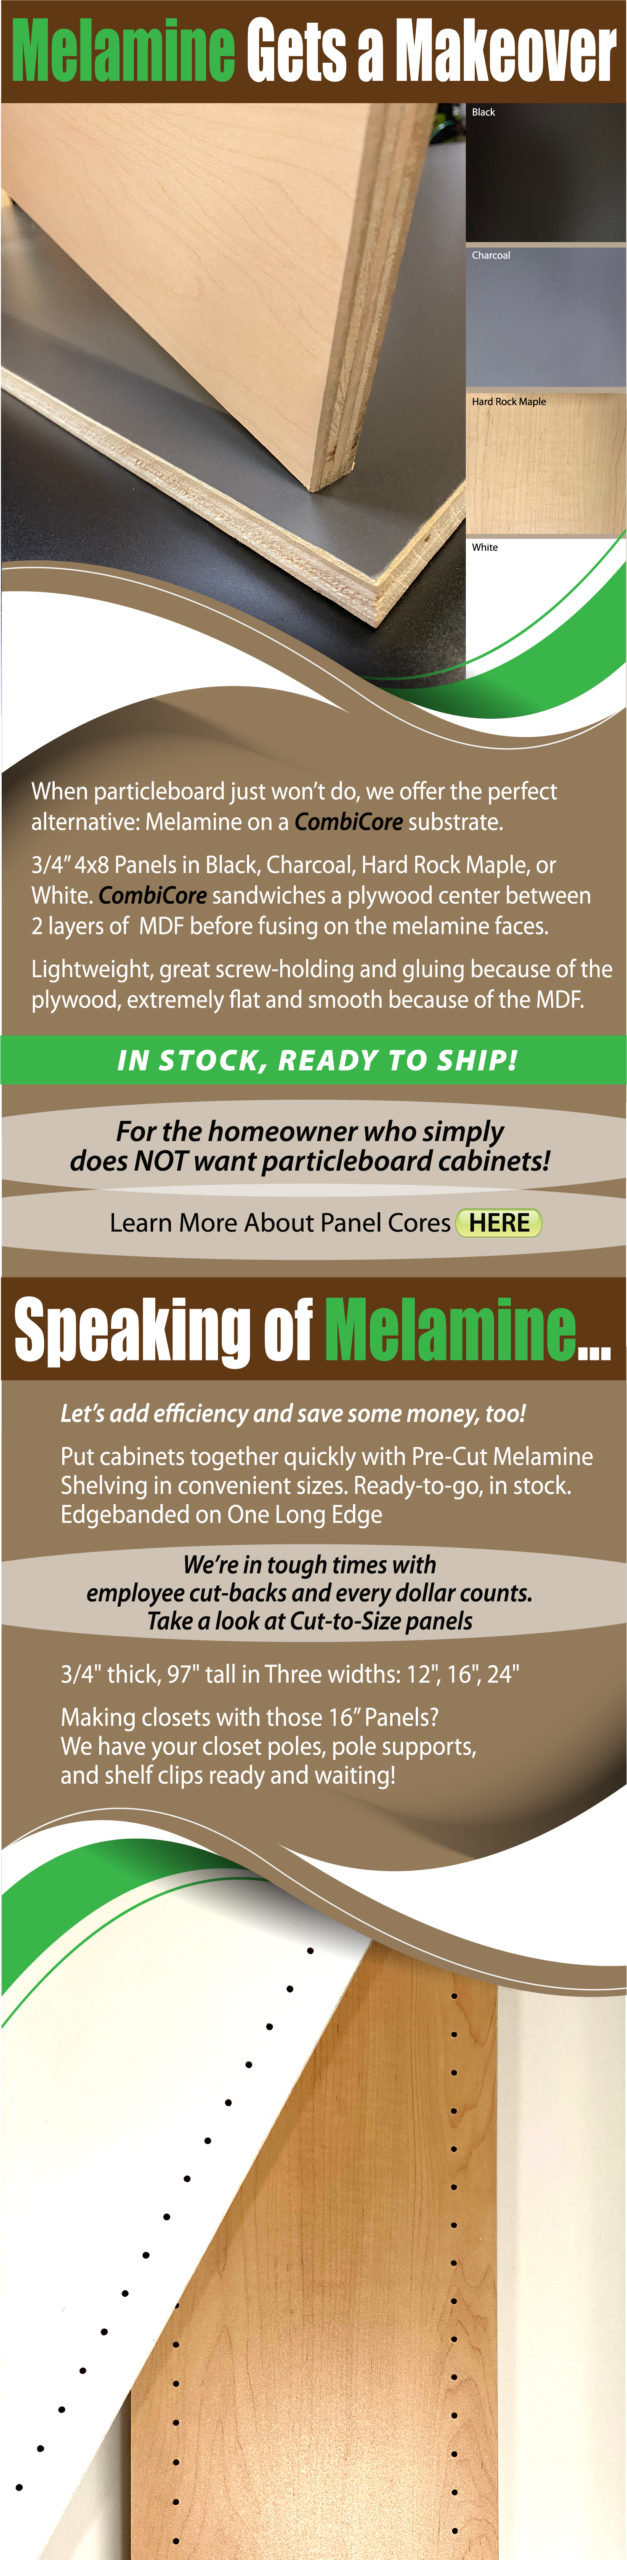 Melamine Makeover Infographic